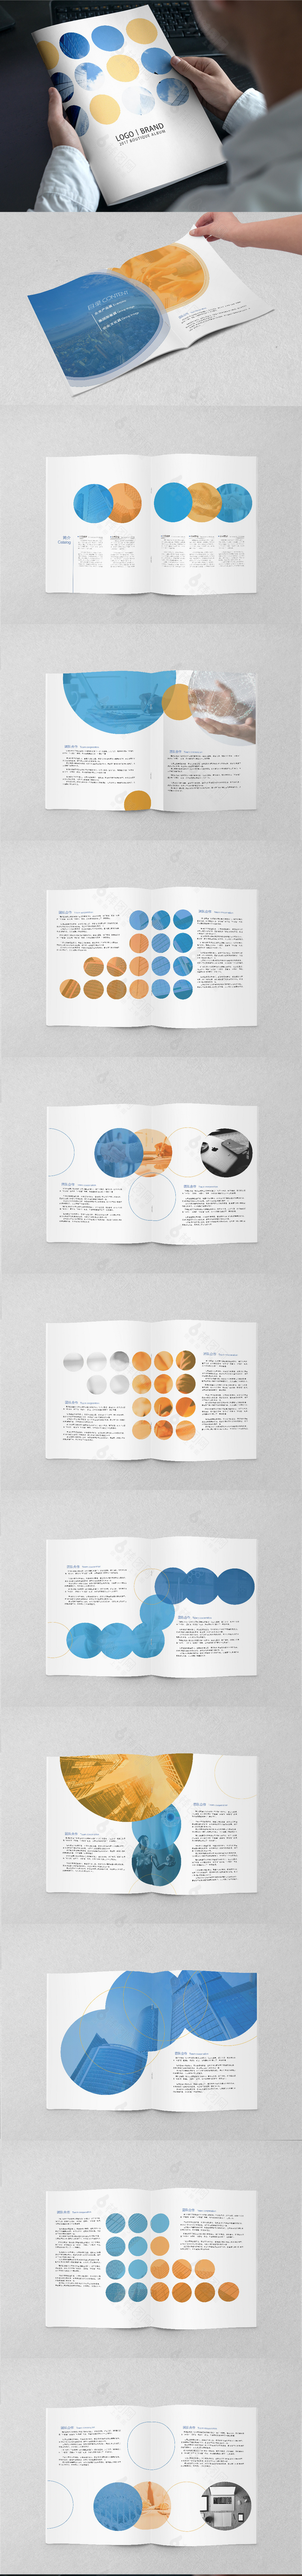 蓝色简约企业画册宣传设计